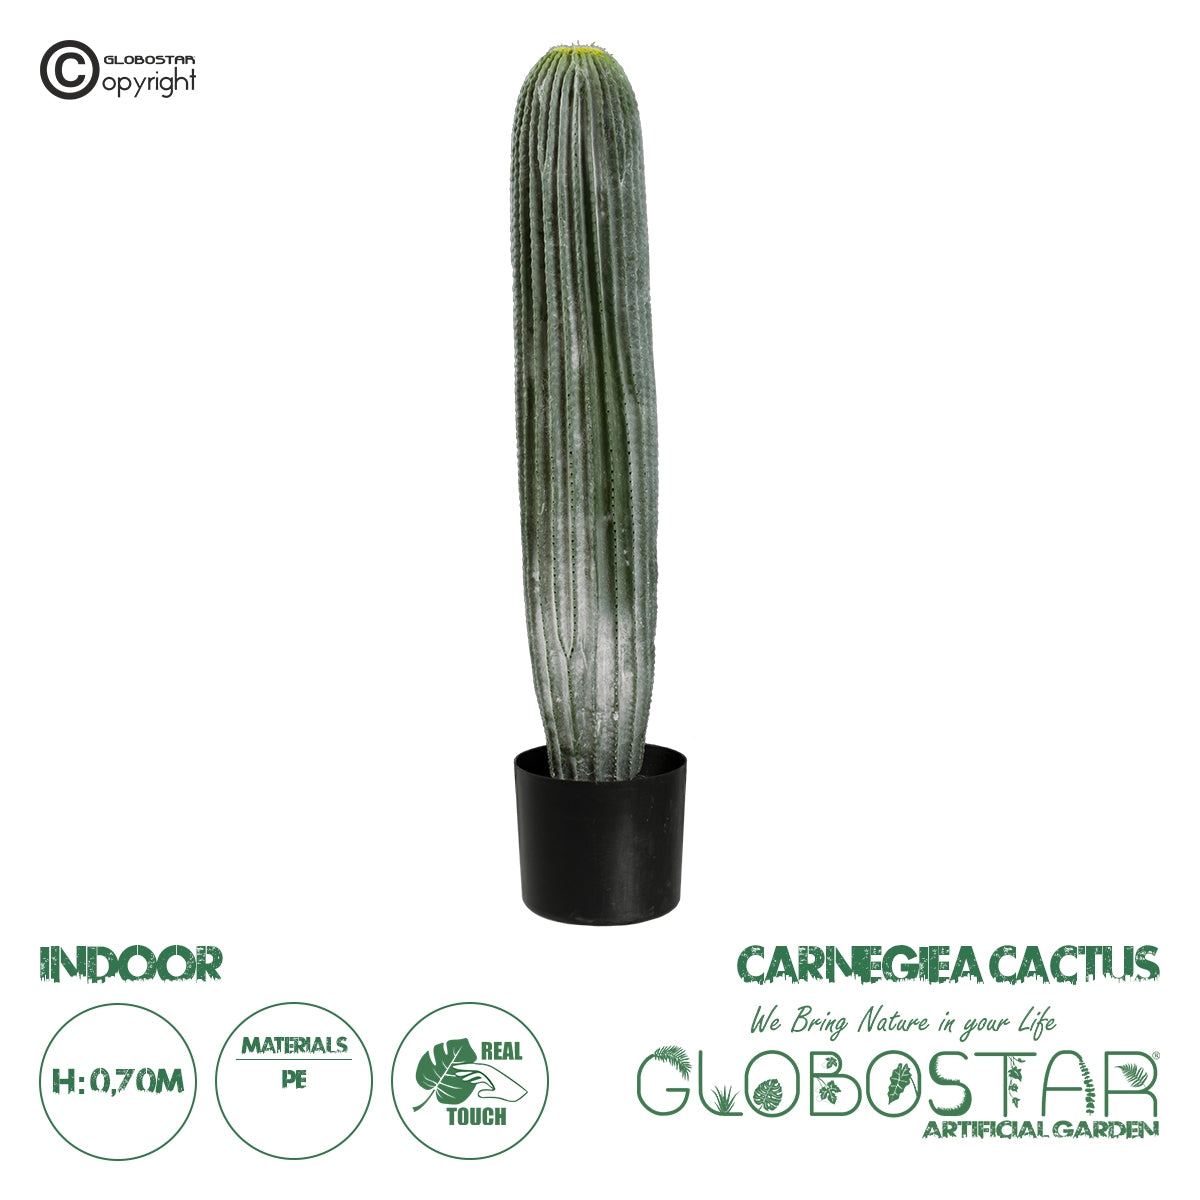 GloboStar® Artificial Garden CARNEGIEA CACTUS 20124 Τεχνητό Διακοσμητικό Φυτό Κάκτος Σαγκουάρο Υ70cm